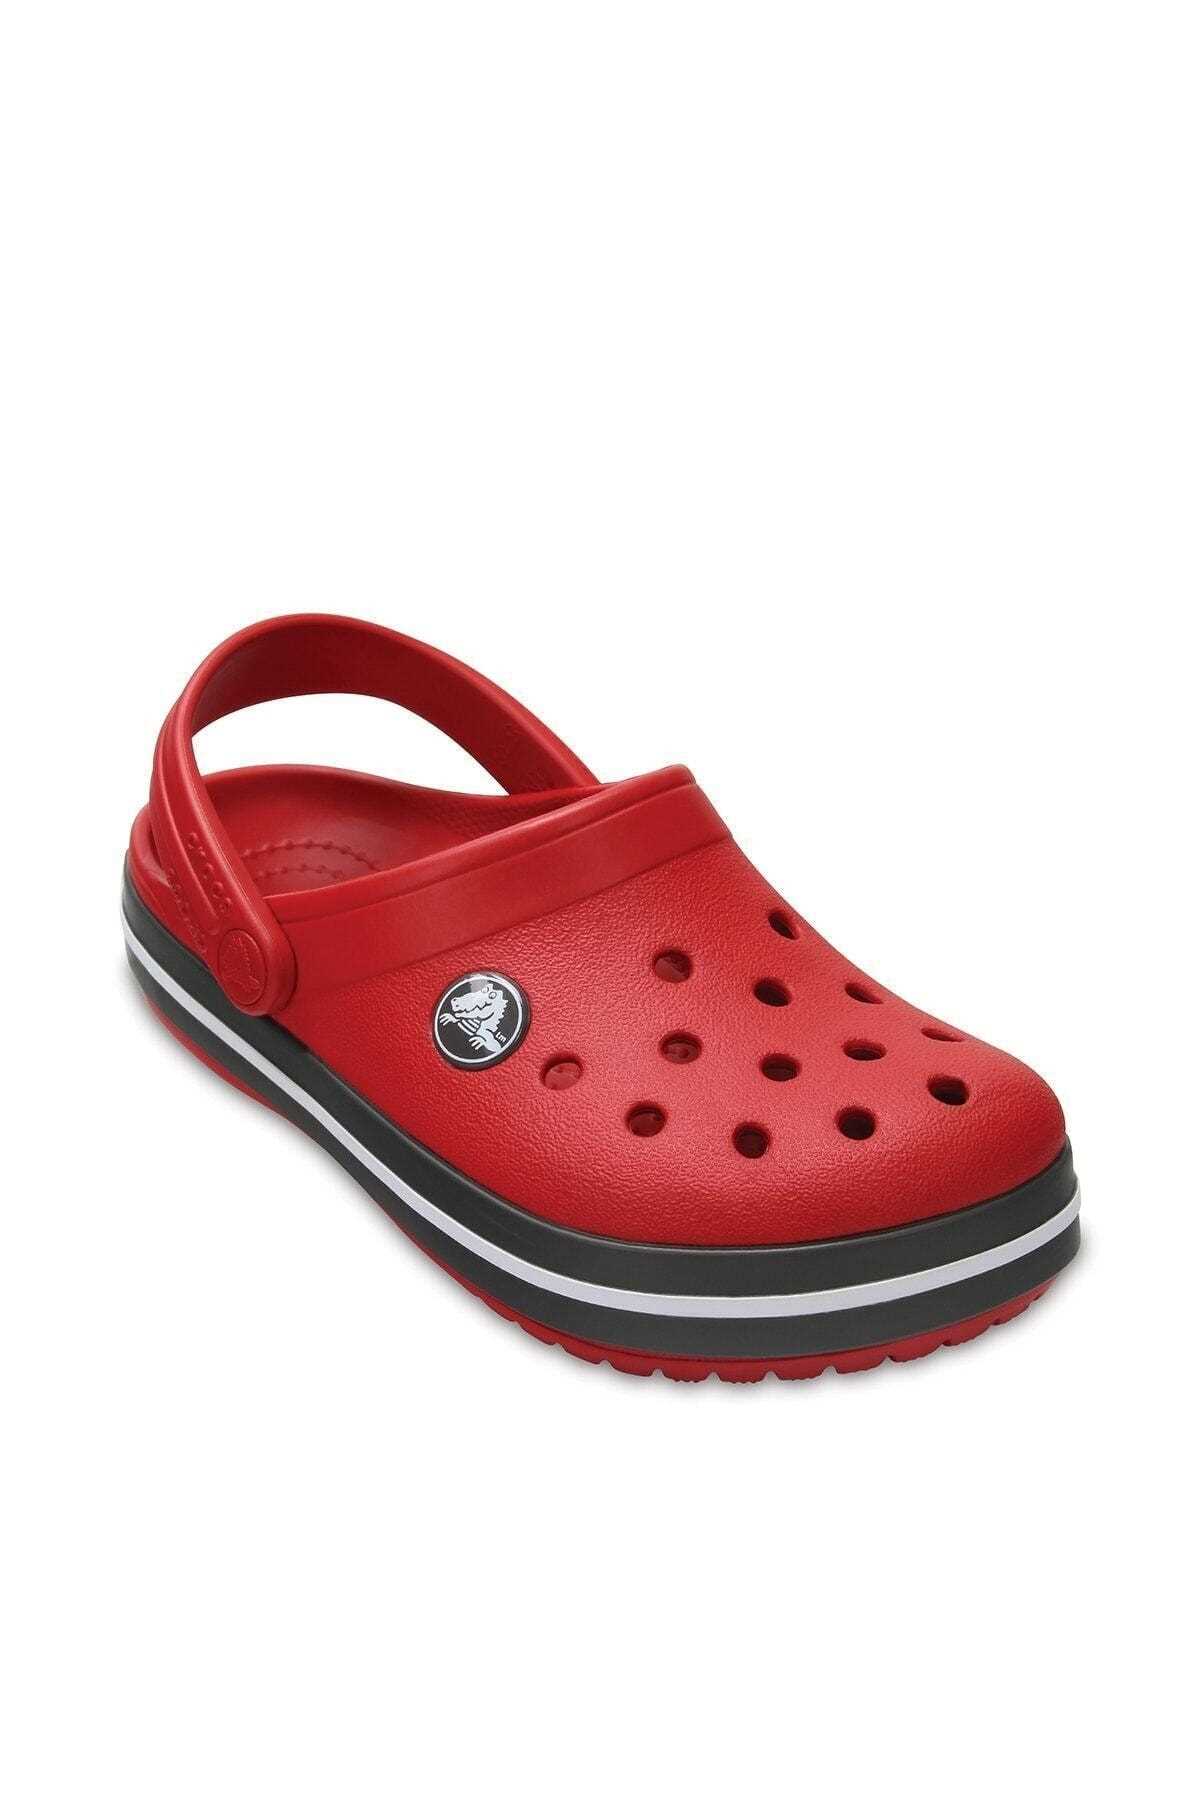 دمپایی ارزانی شیک Crocs Kids رنگ قرمز ty2149487